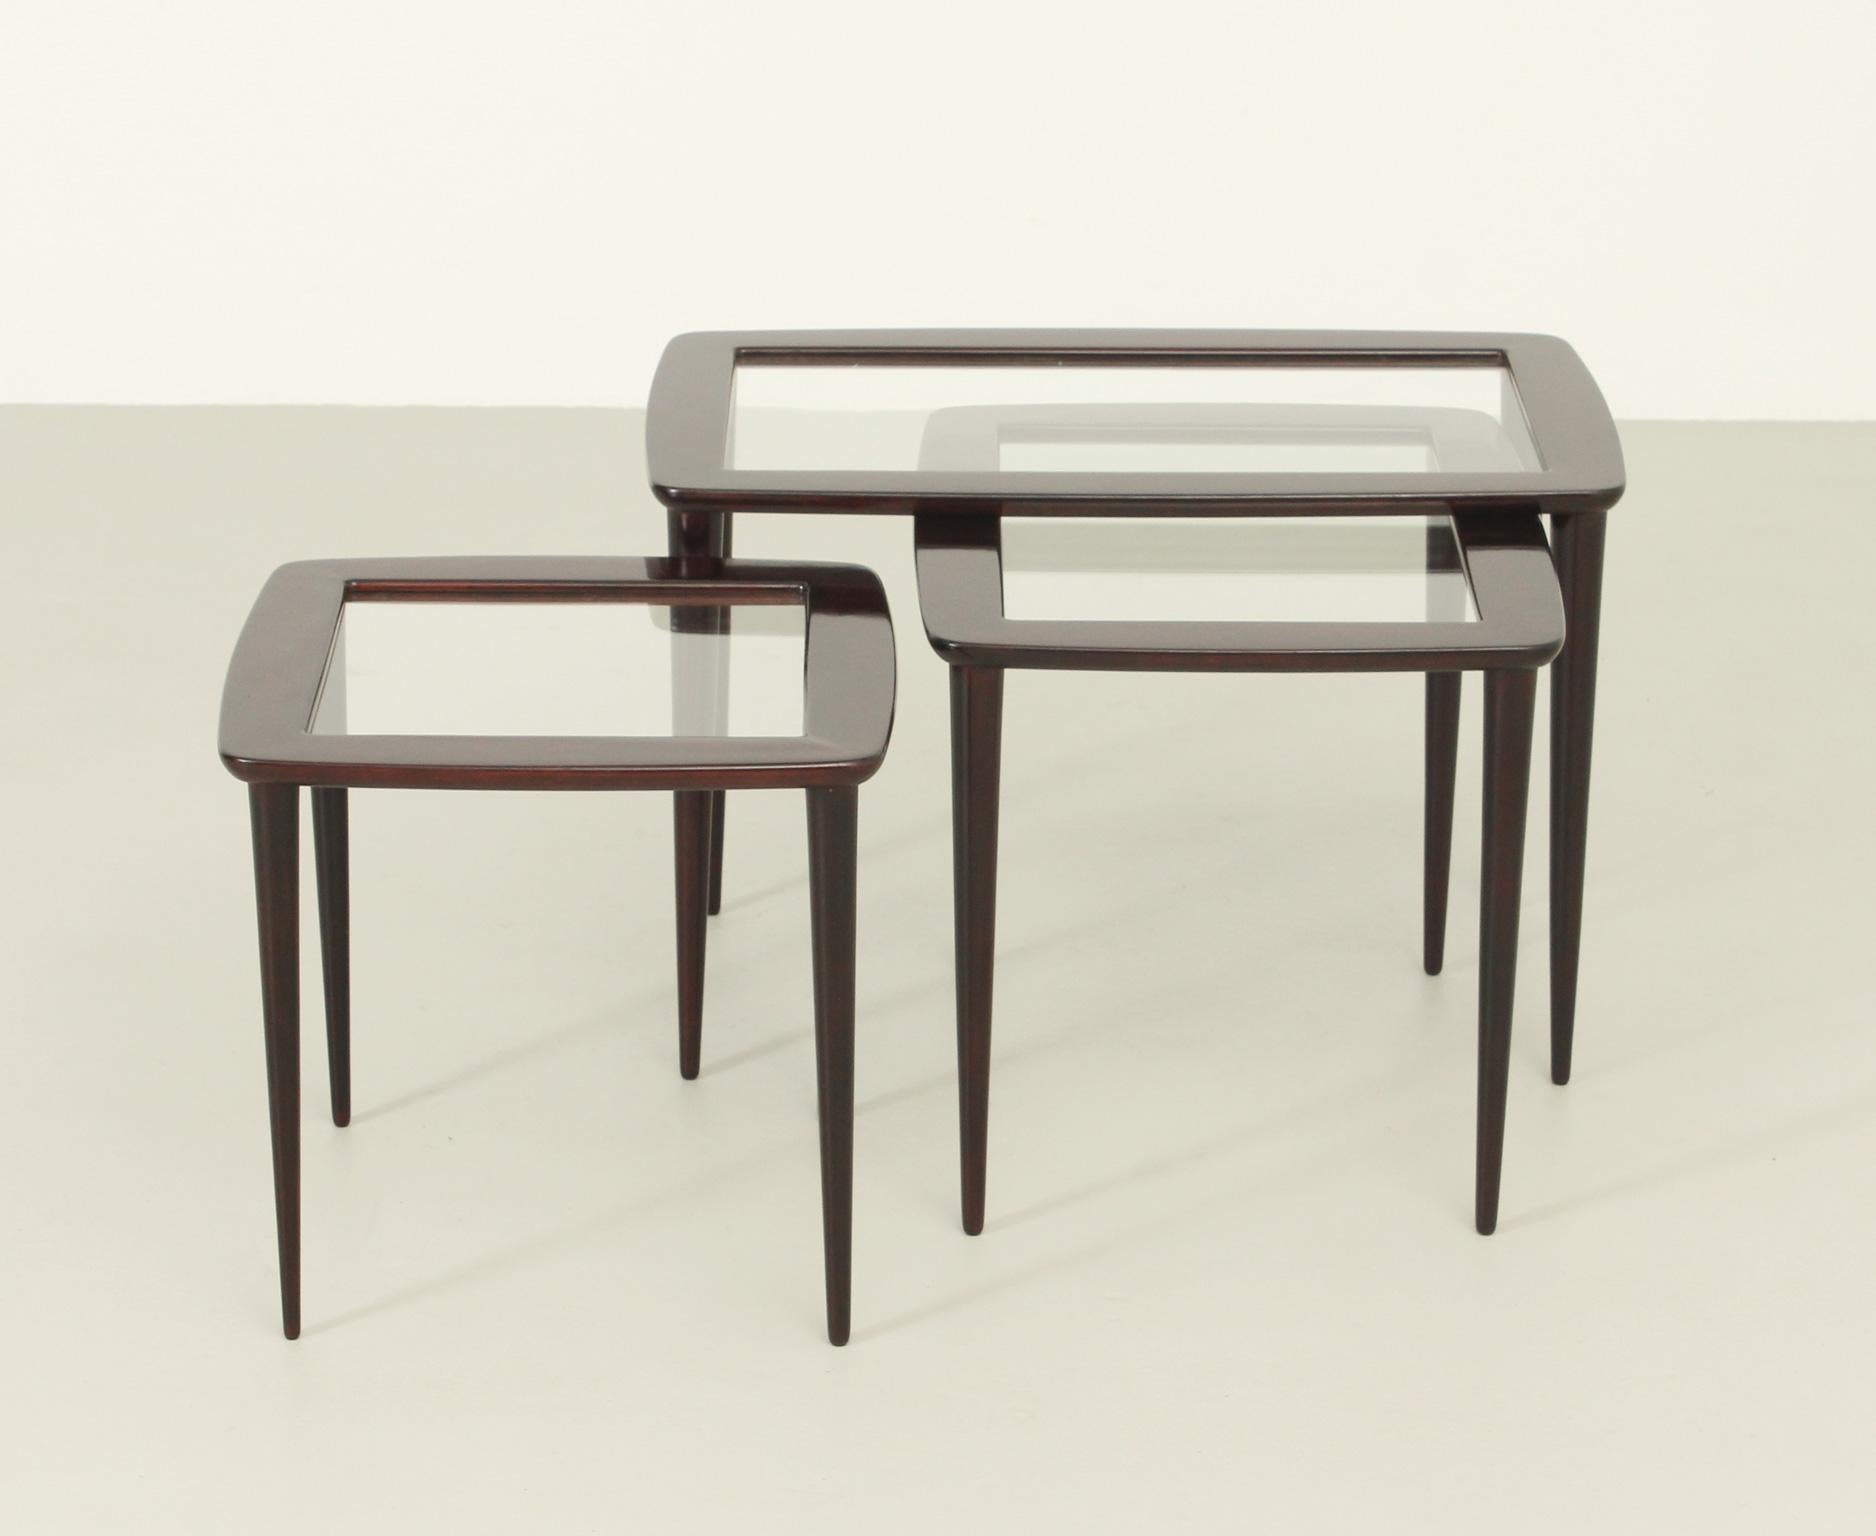 Ensemble de tables gigognes modèle 401 conçu en 1955 par Ico Parisi pour De Baggis, Italie. Cadres en bois avec plateau en verre d'origine. Les pieds peuvent être facilement retirés pour un transport aisé.